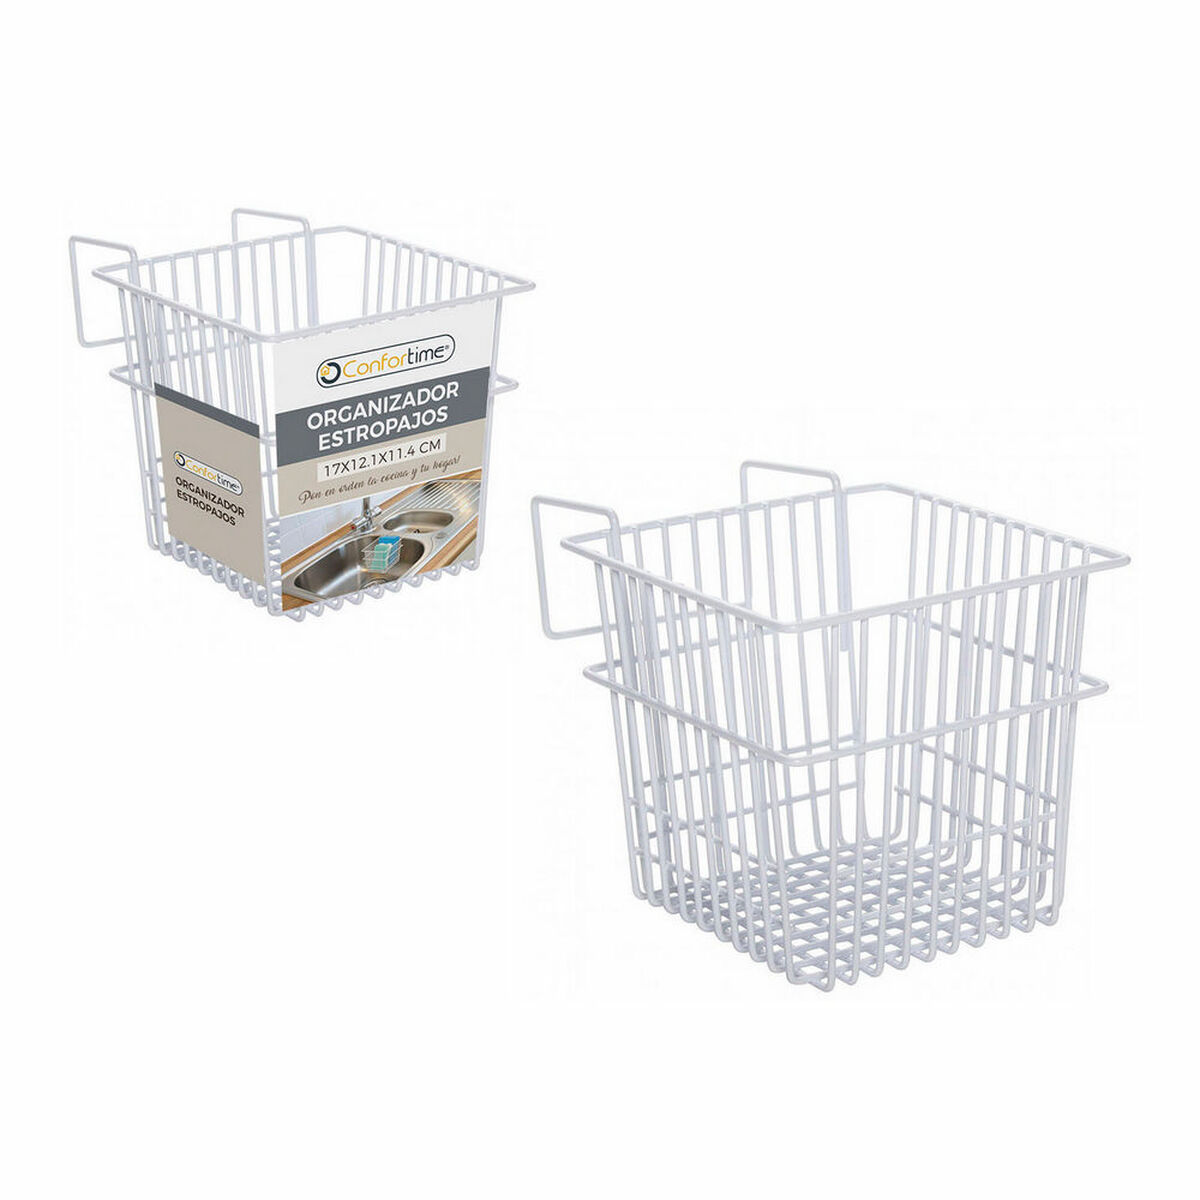 Multi-purpose basket Confortime Drainer (17 x 12,1 x 13,5 cm)